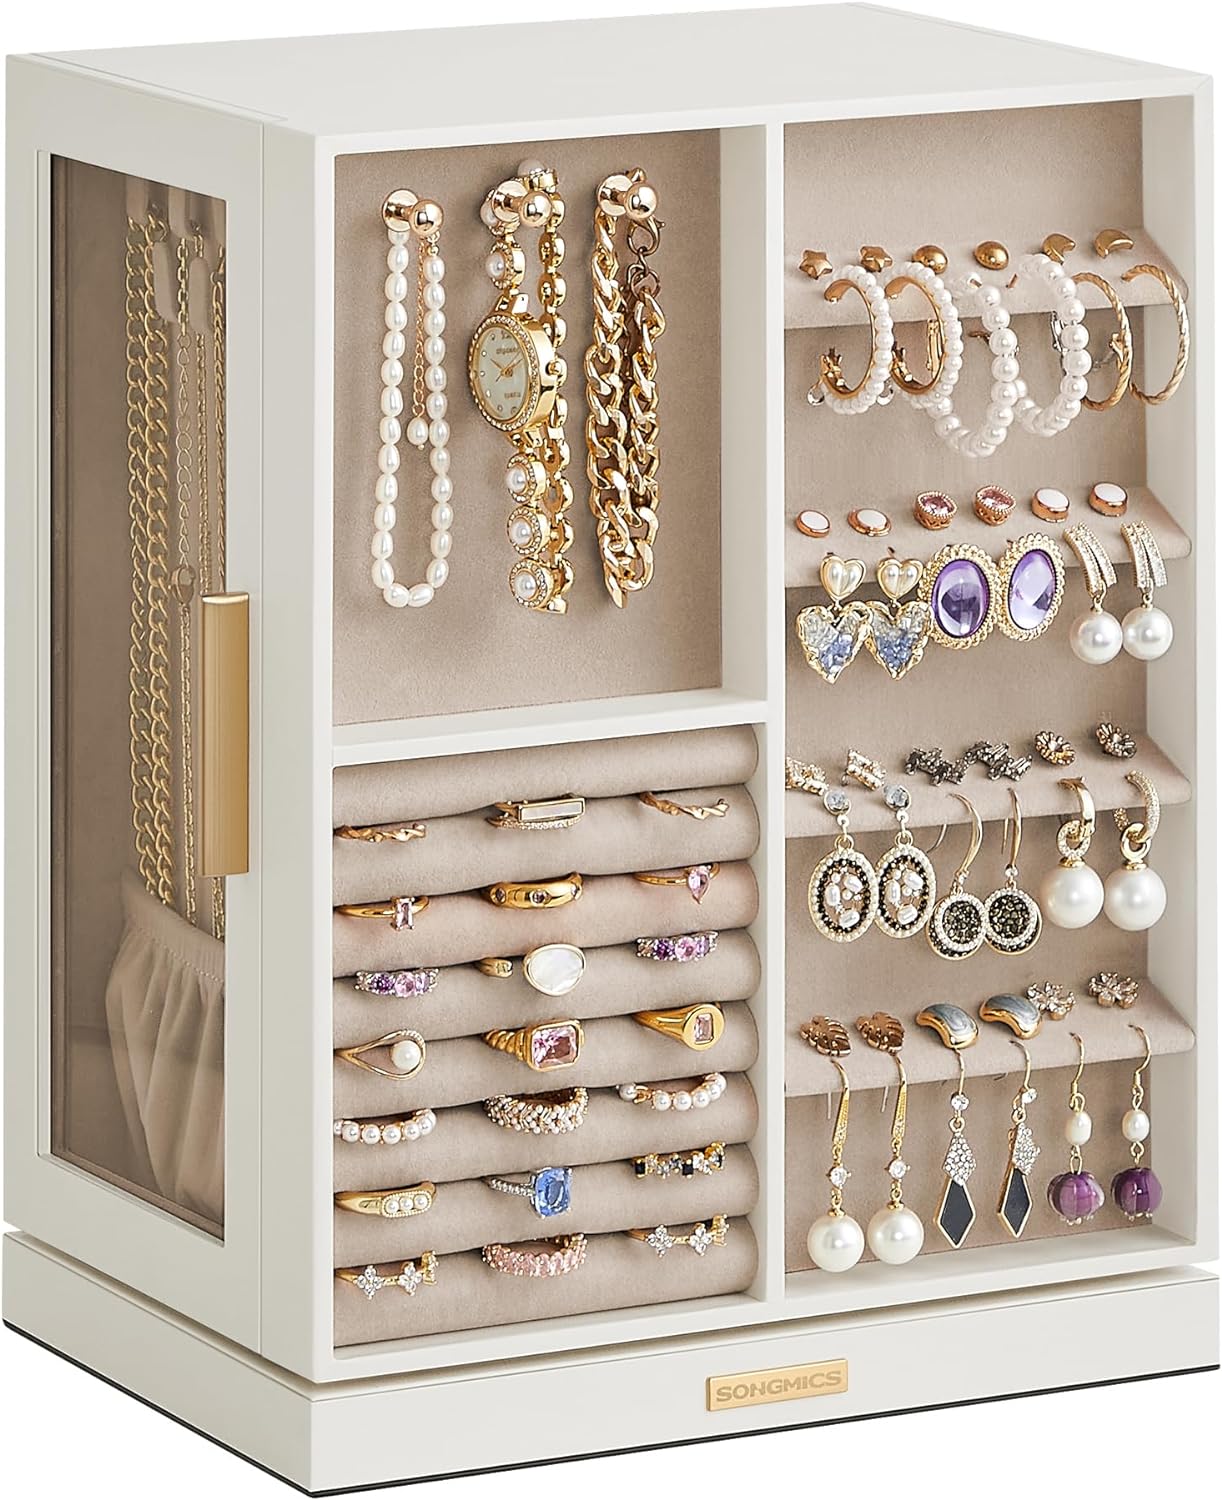 Jewelry Organizer Storage Case with 5 Drawers, 360 Rotating Organizer, Jewelry Storage, Open Design, Cloud White